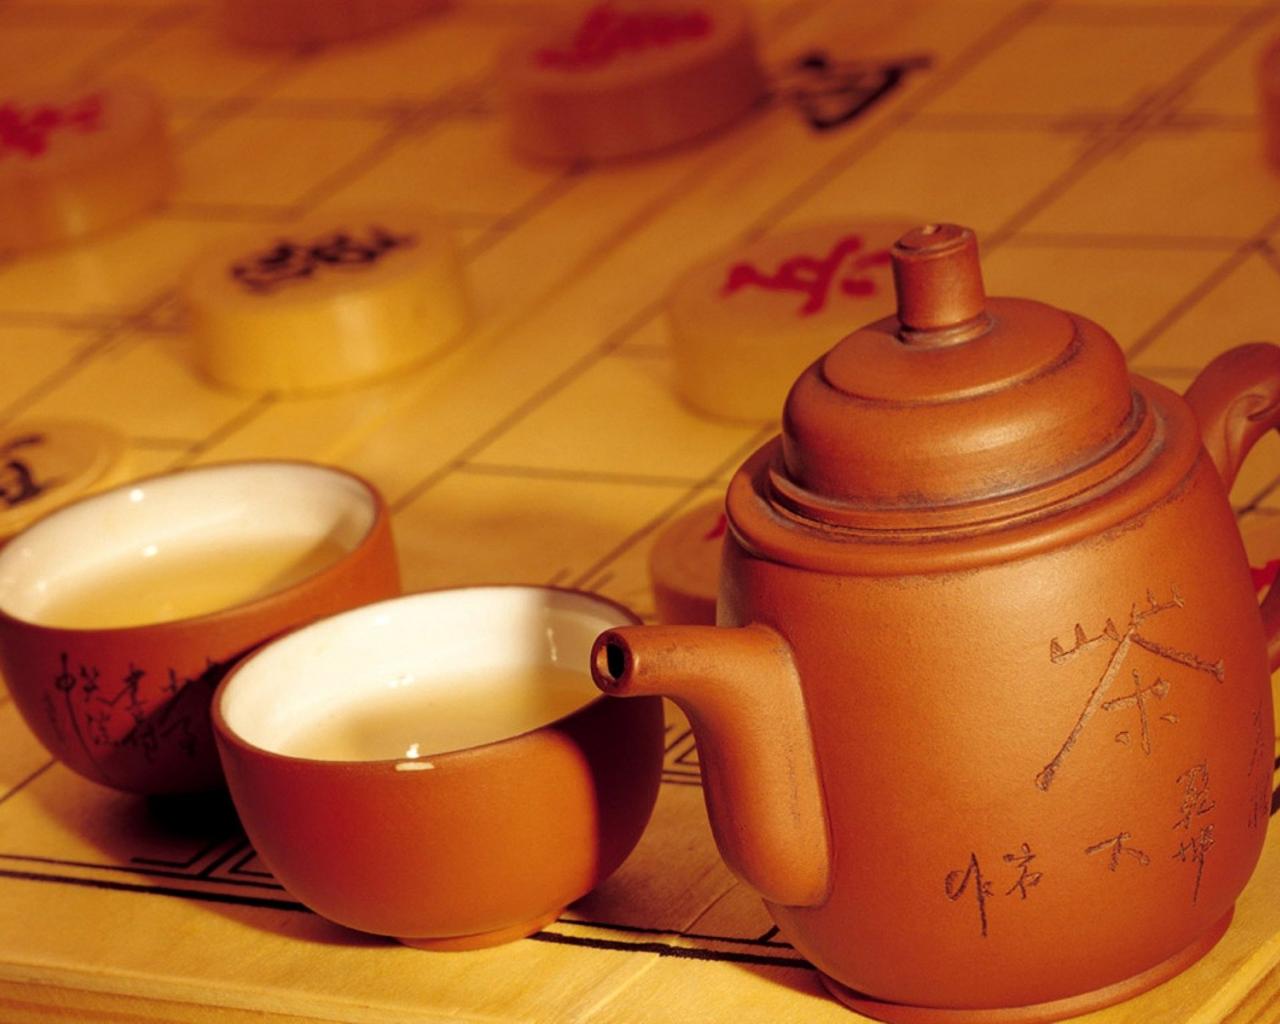 can we get tea asian teapot cup hd wallpaper - (#27295) - HQ ...